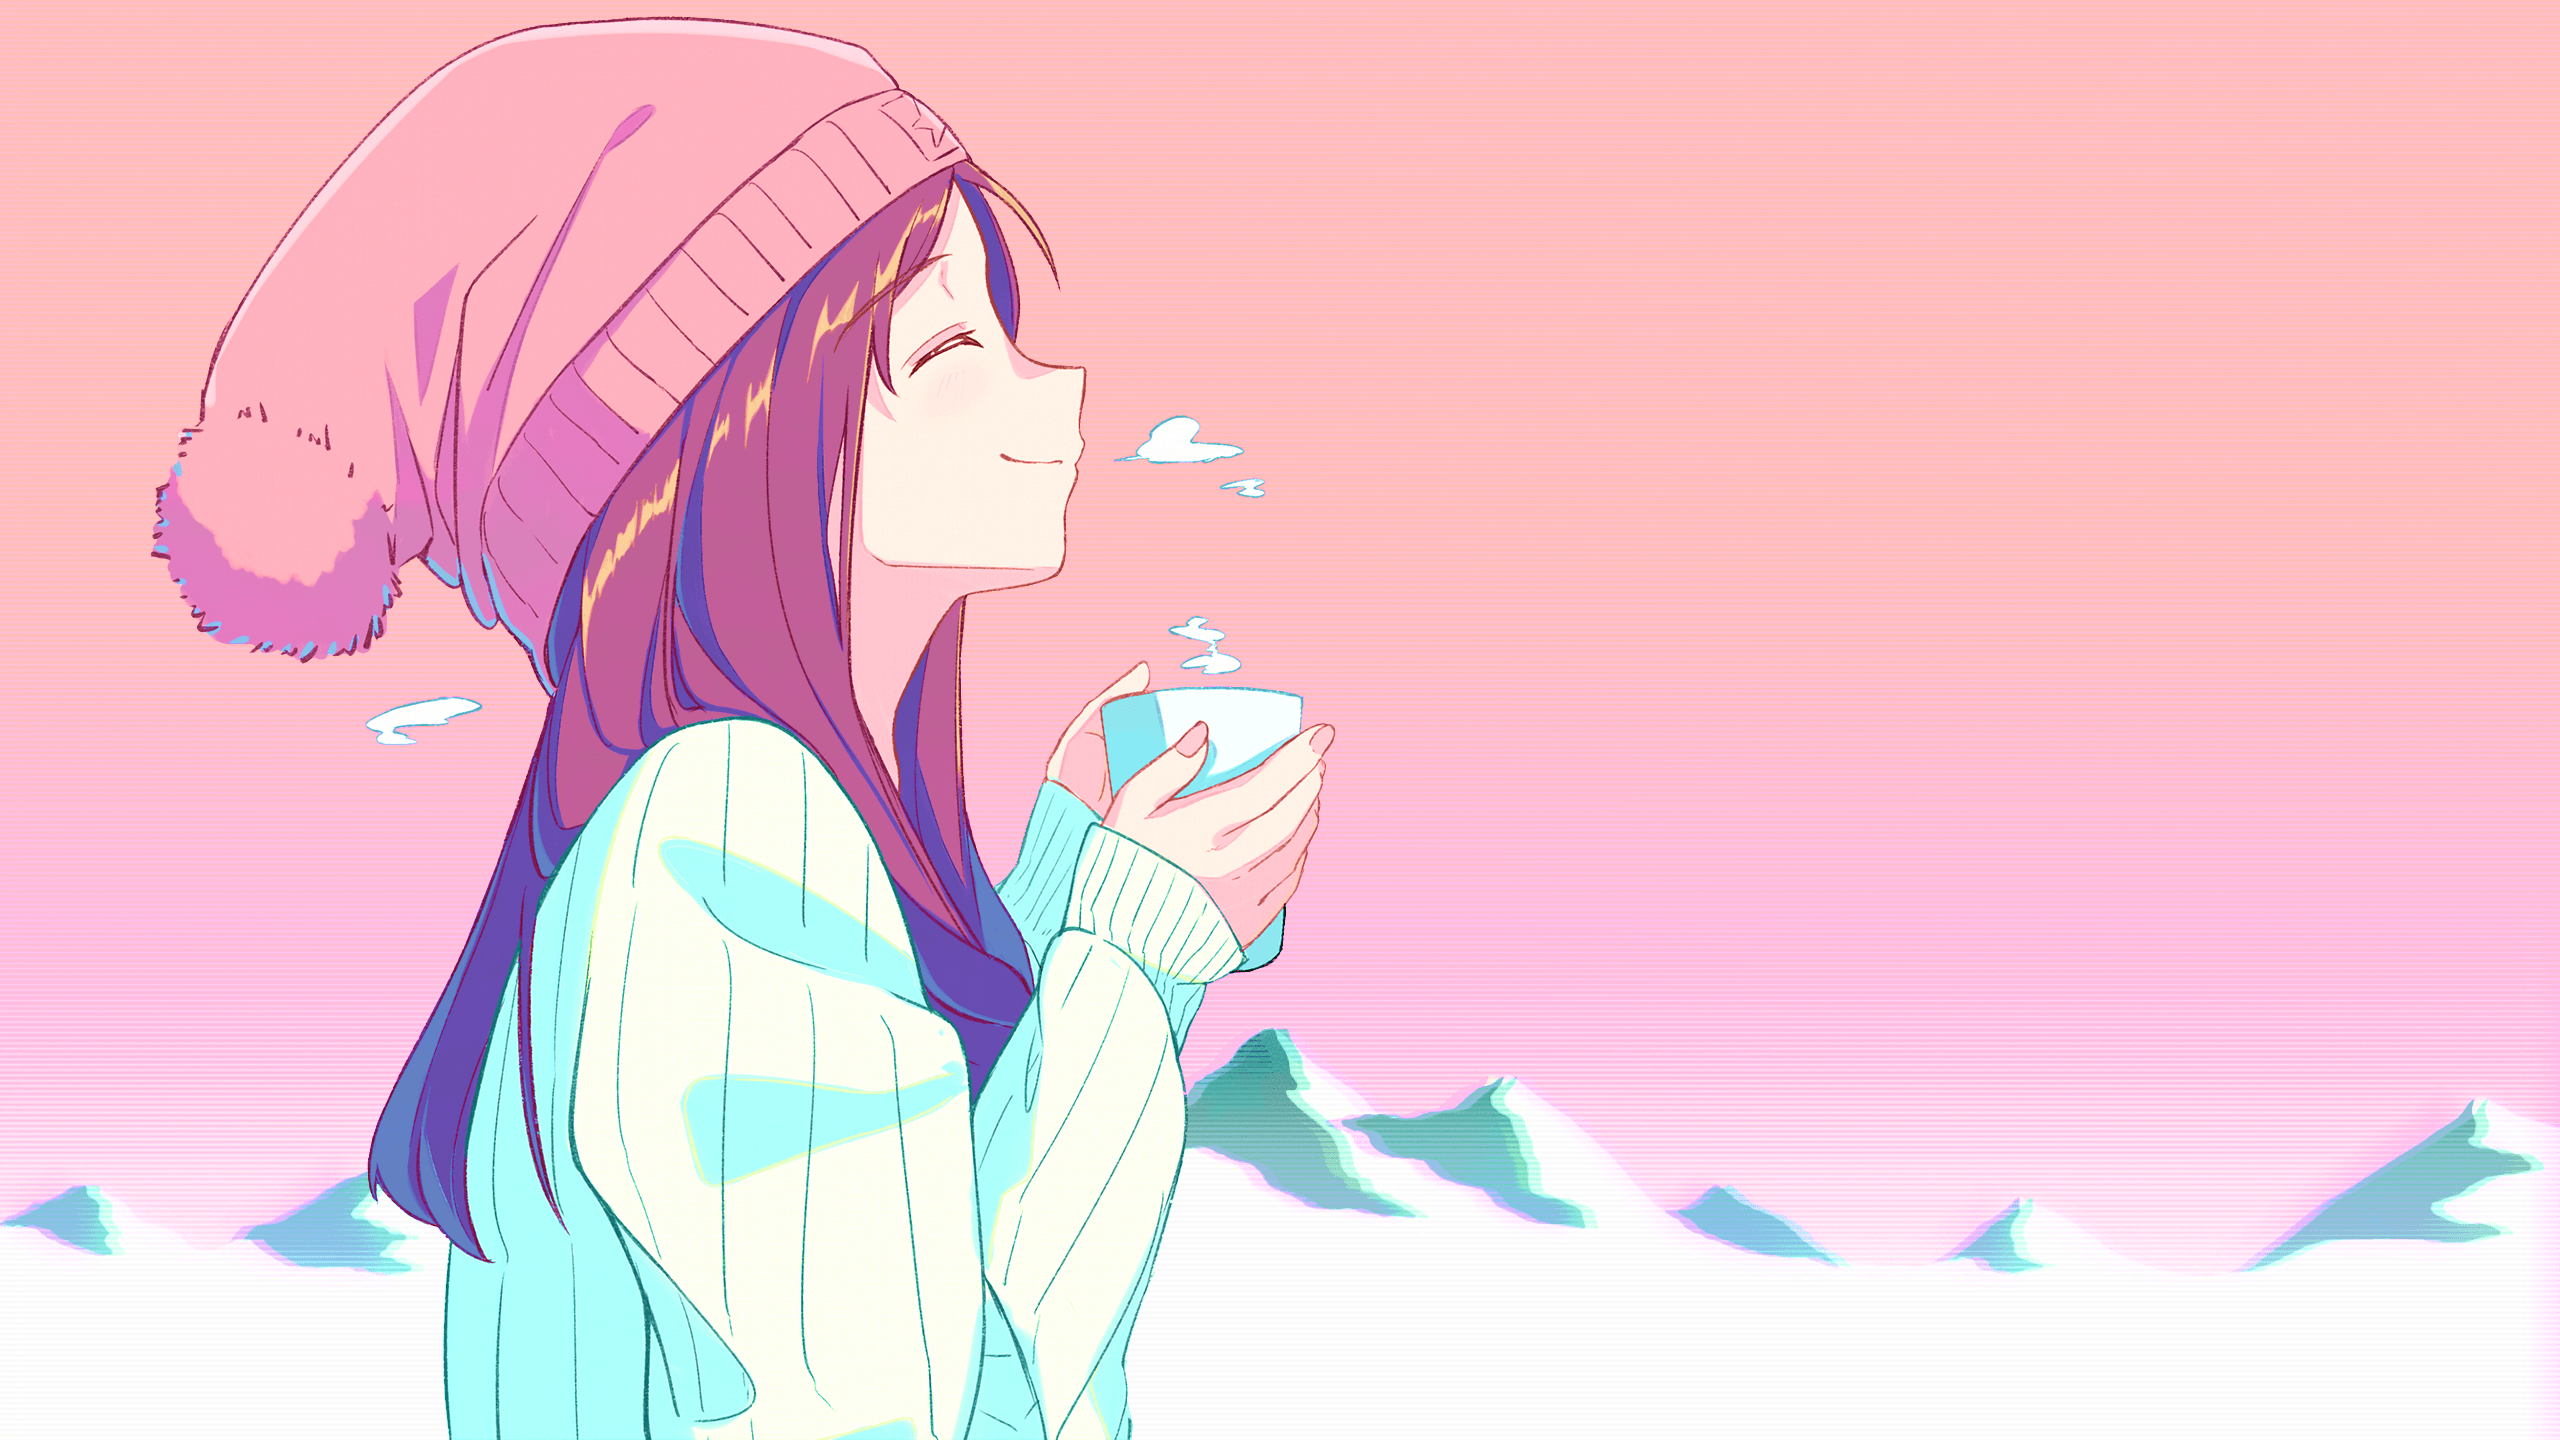 2560x1440 Cô gái uống trà [Original](2560x1440): Giấy dán tường anime